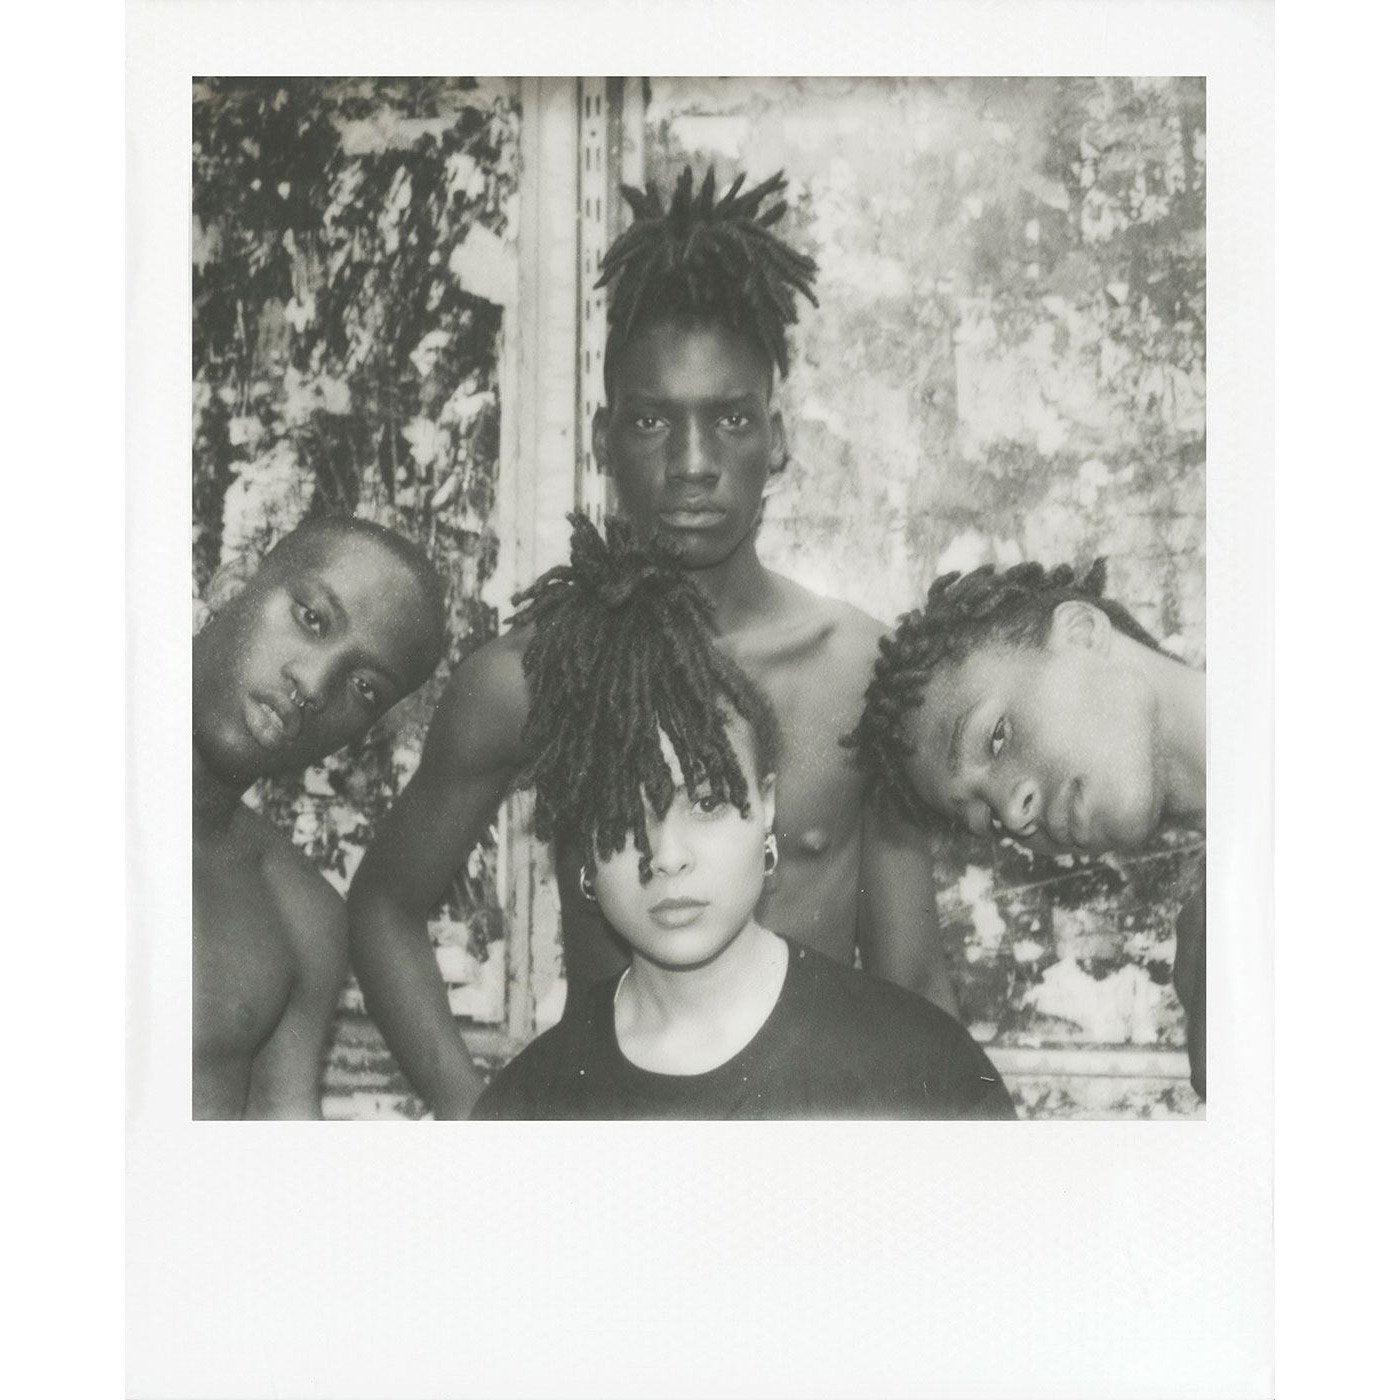 Polaroid Now Generation 2 - Black and White